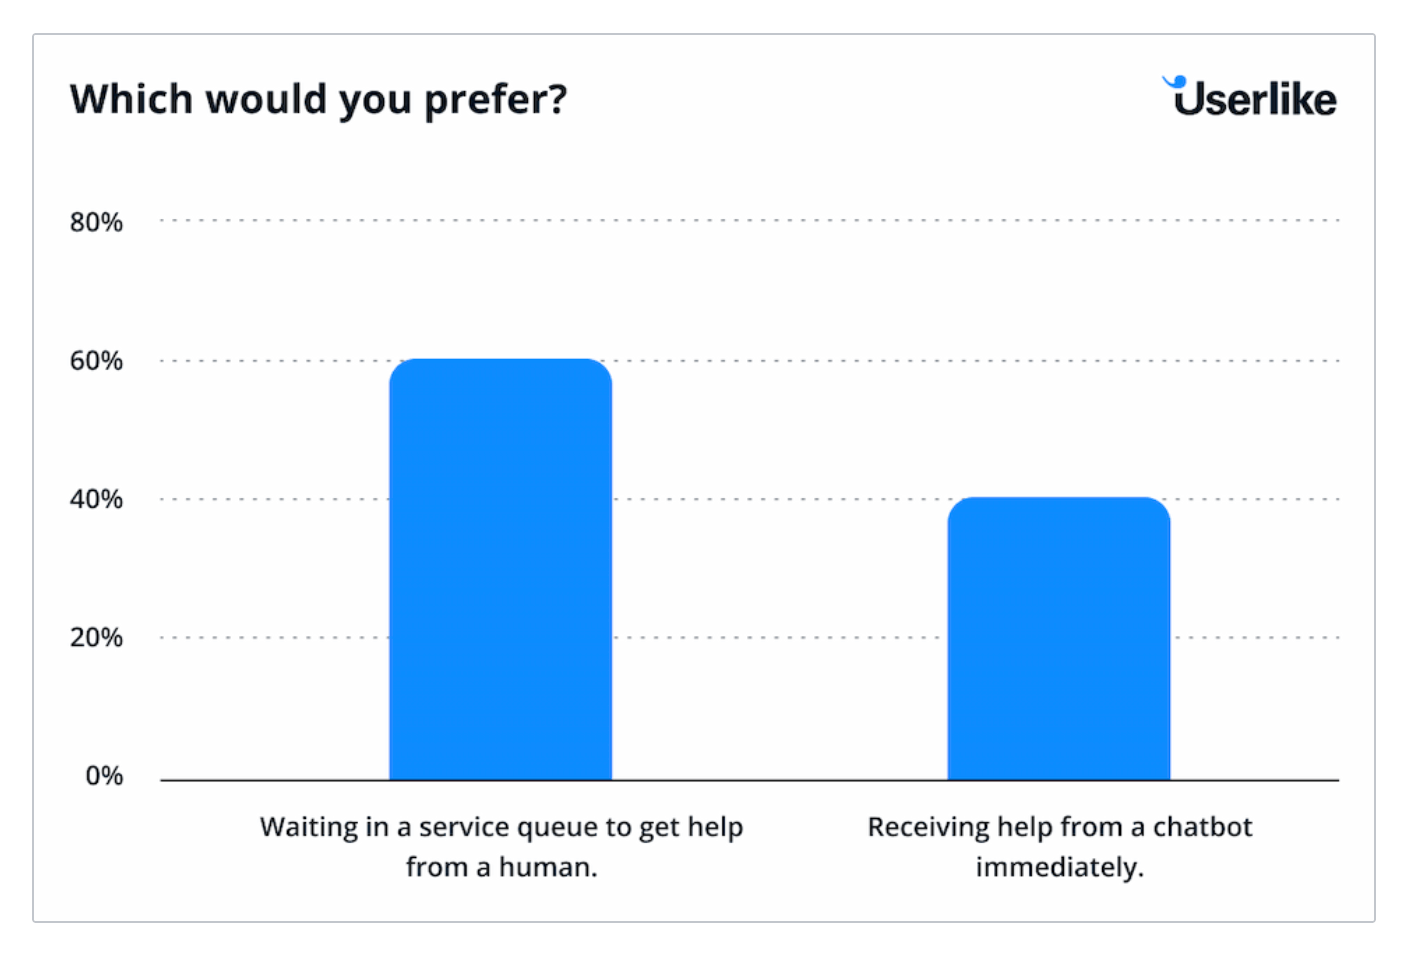 Sondage Userlike survey sur les préférences de service client